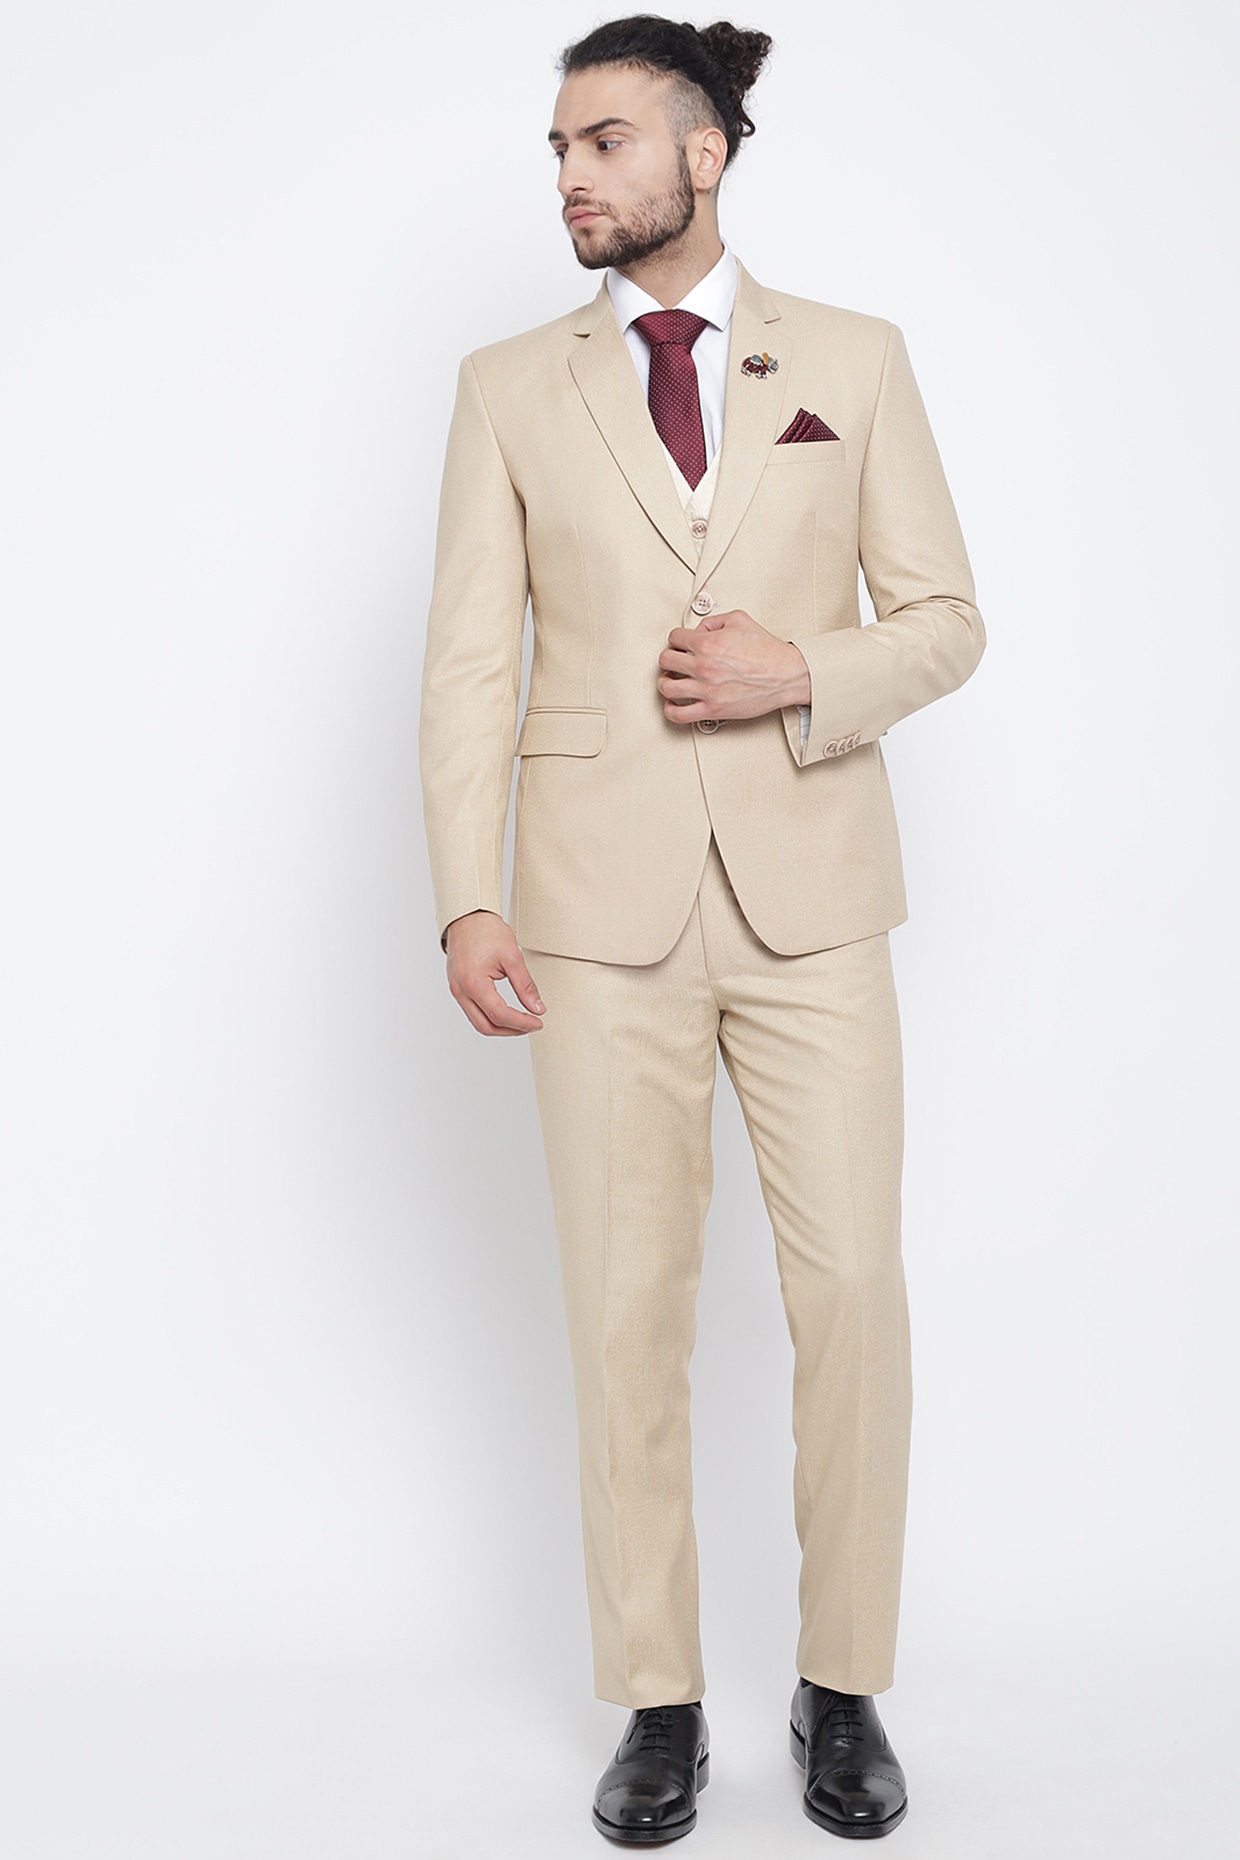 Discover 235+ beige color suit combination best